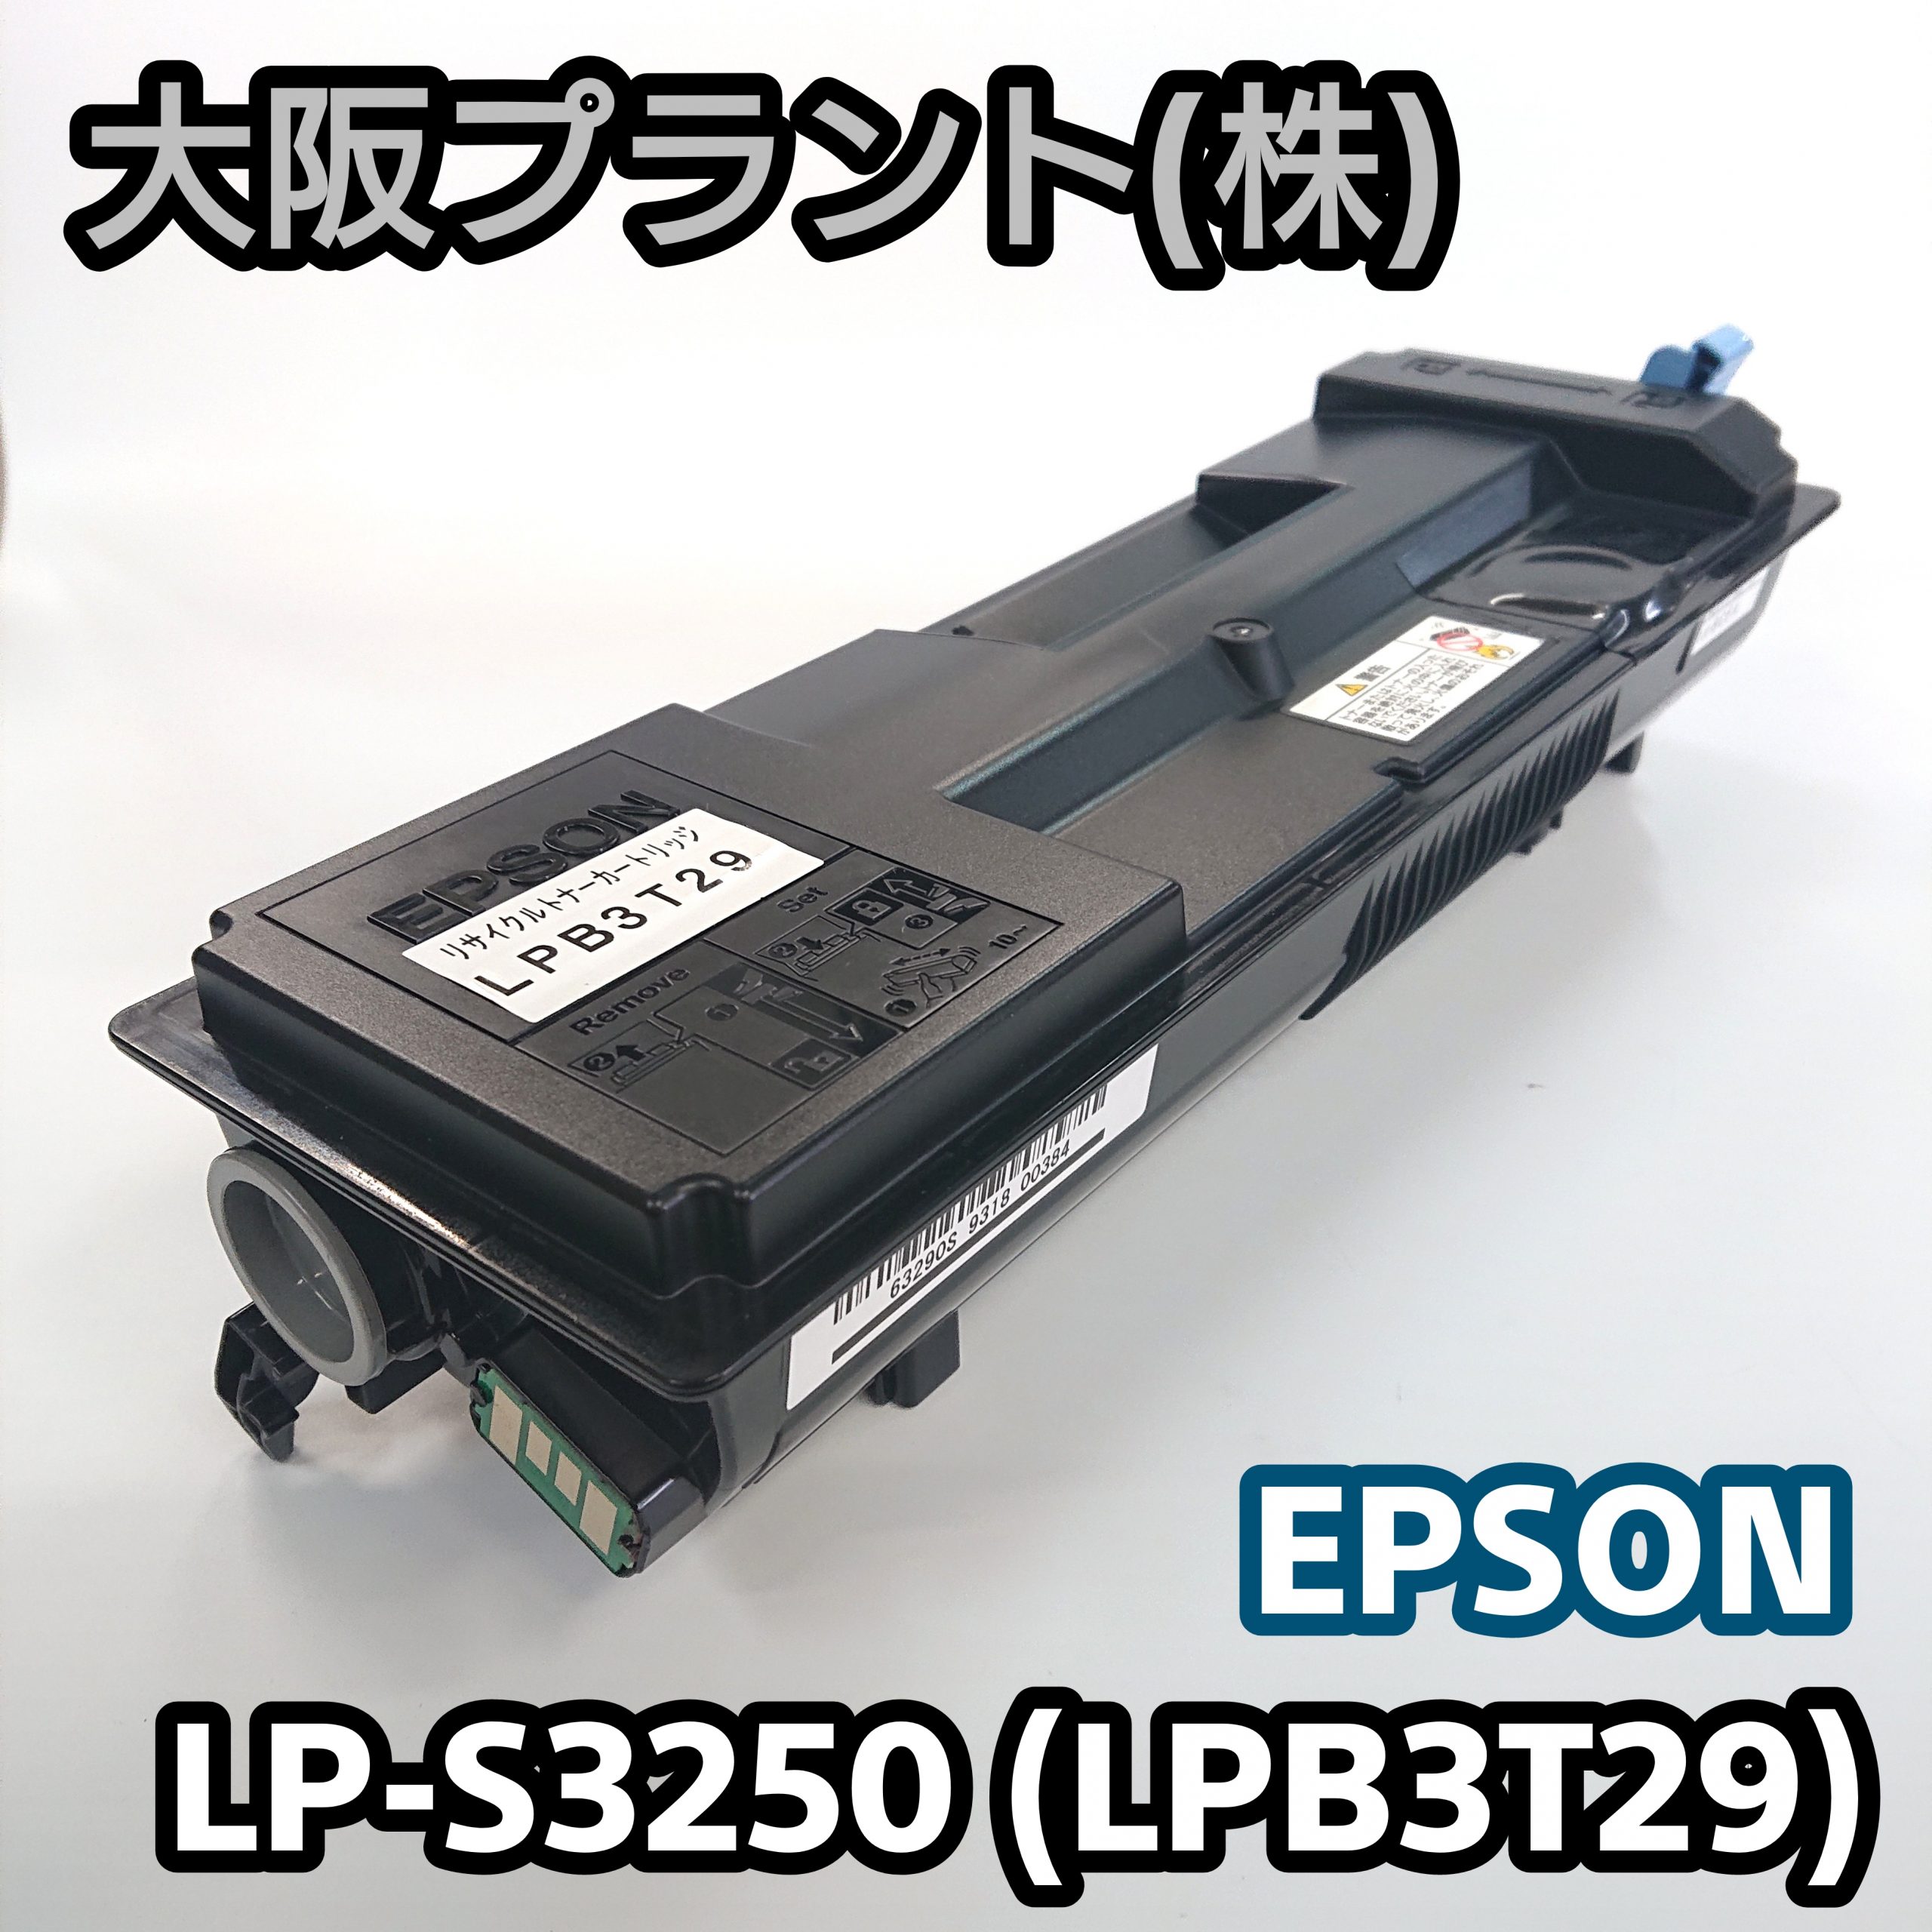 特別価格】再生 エプソン LP-S3250(LPB3T29) PC周辺機器